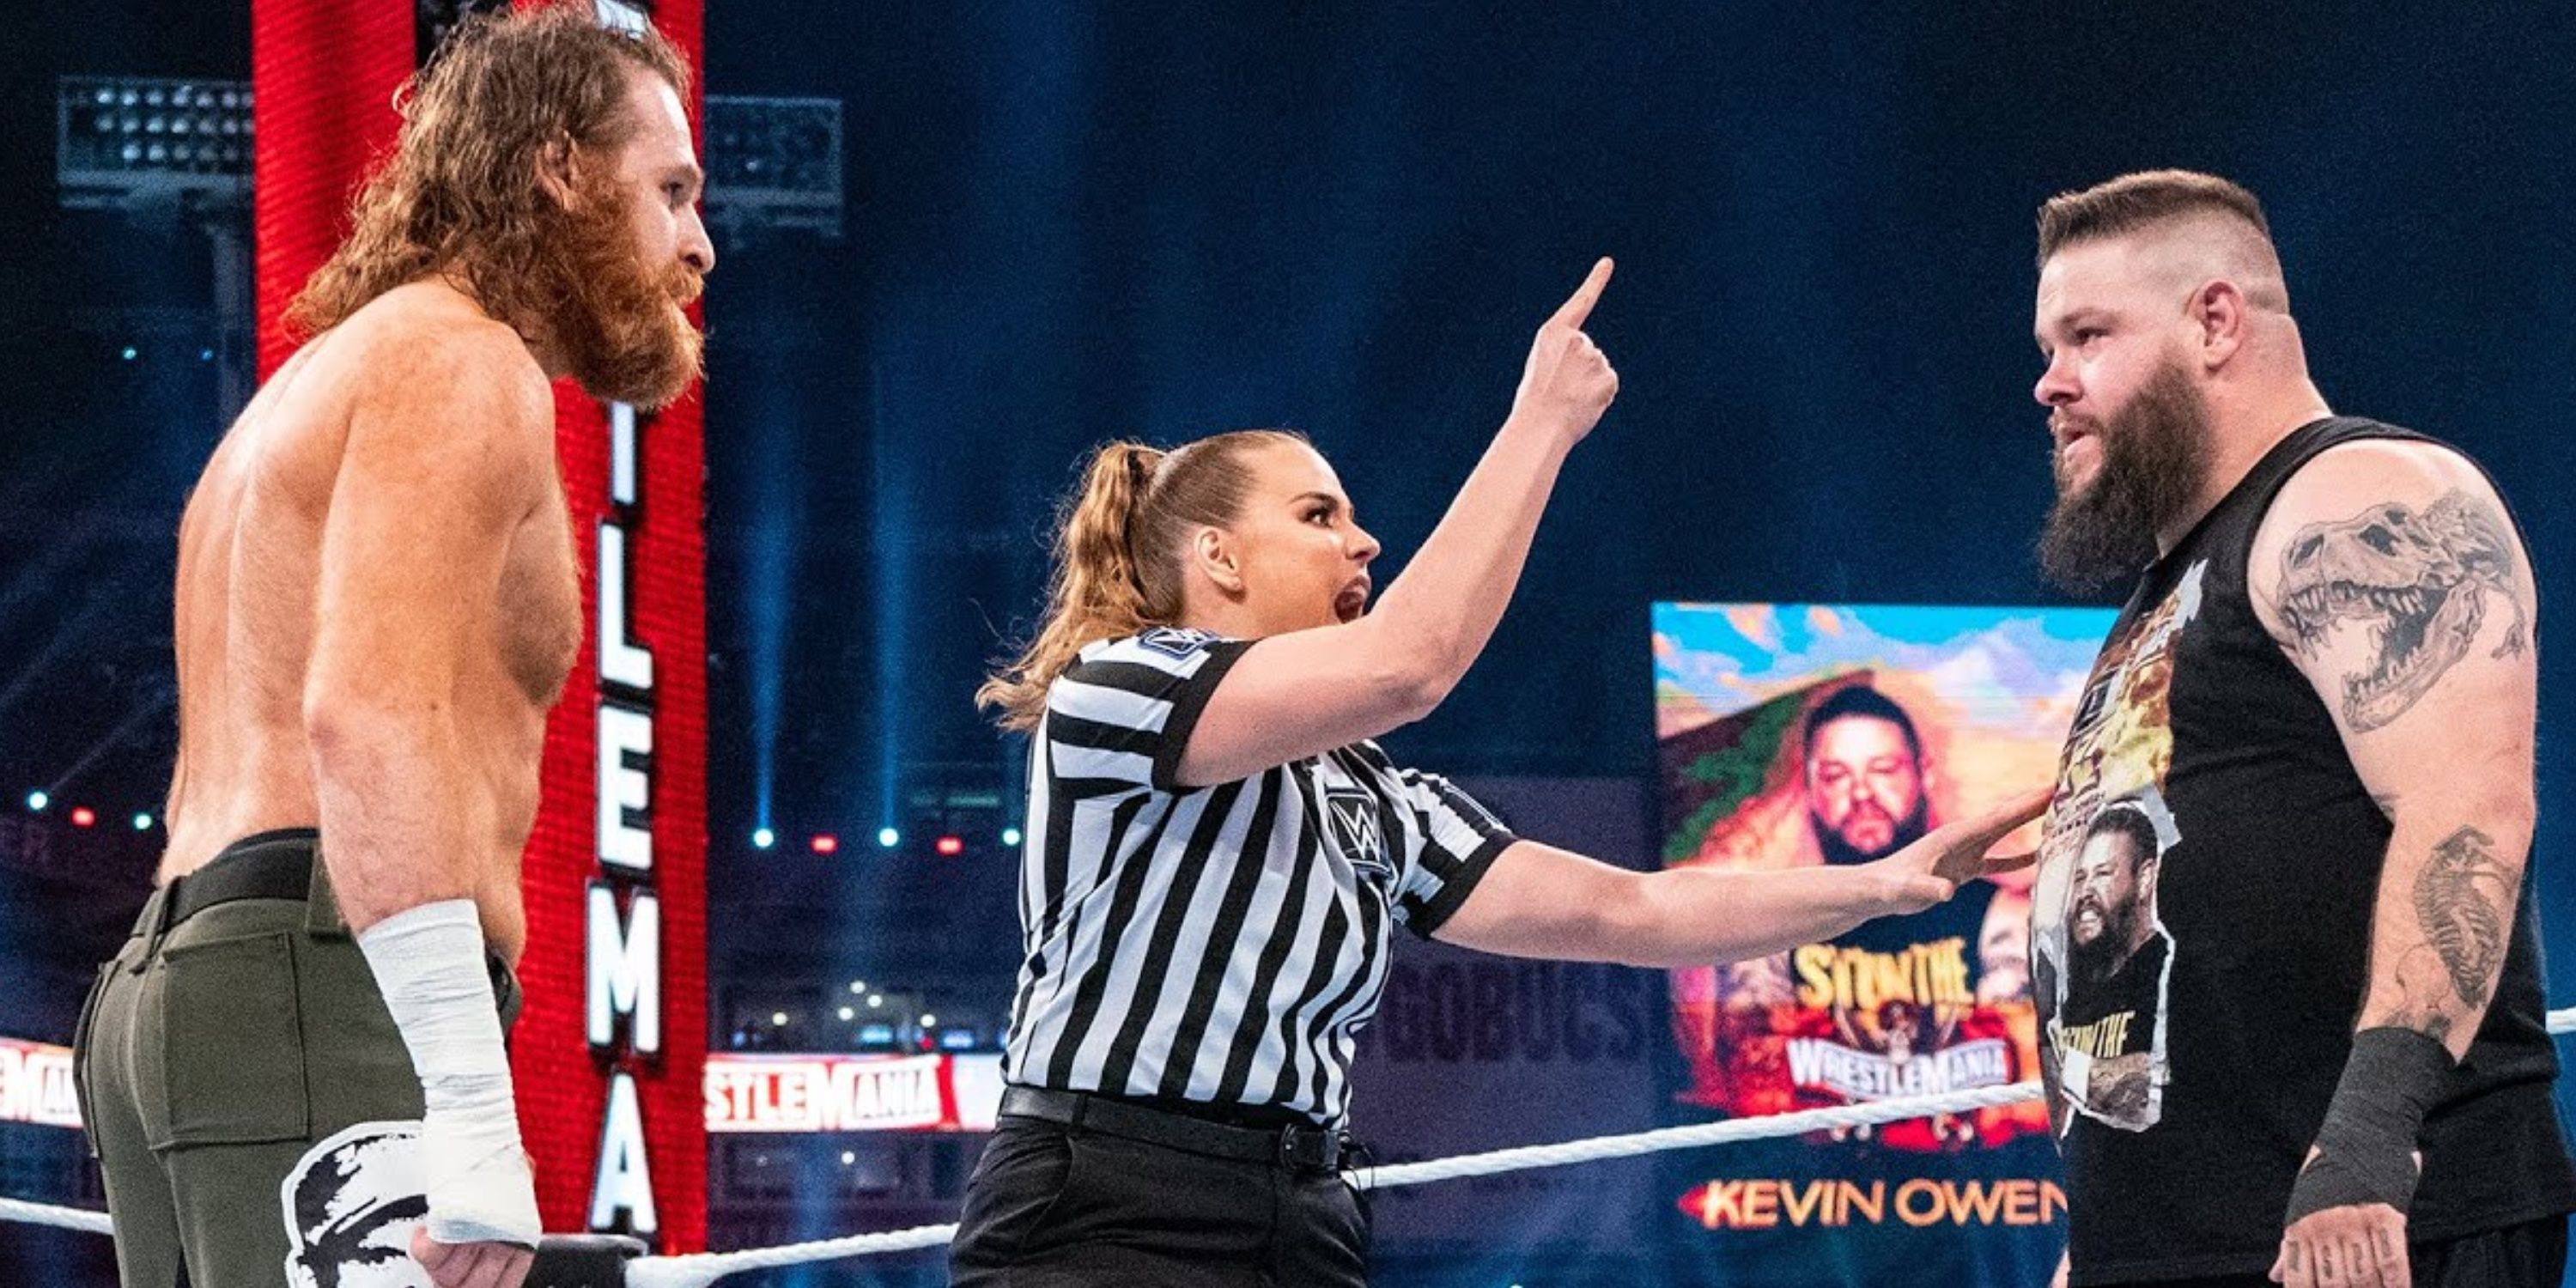 Sami Zayn vs Kevin Owens in WWE